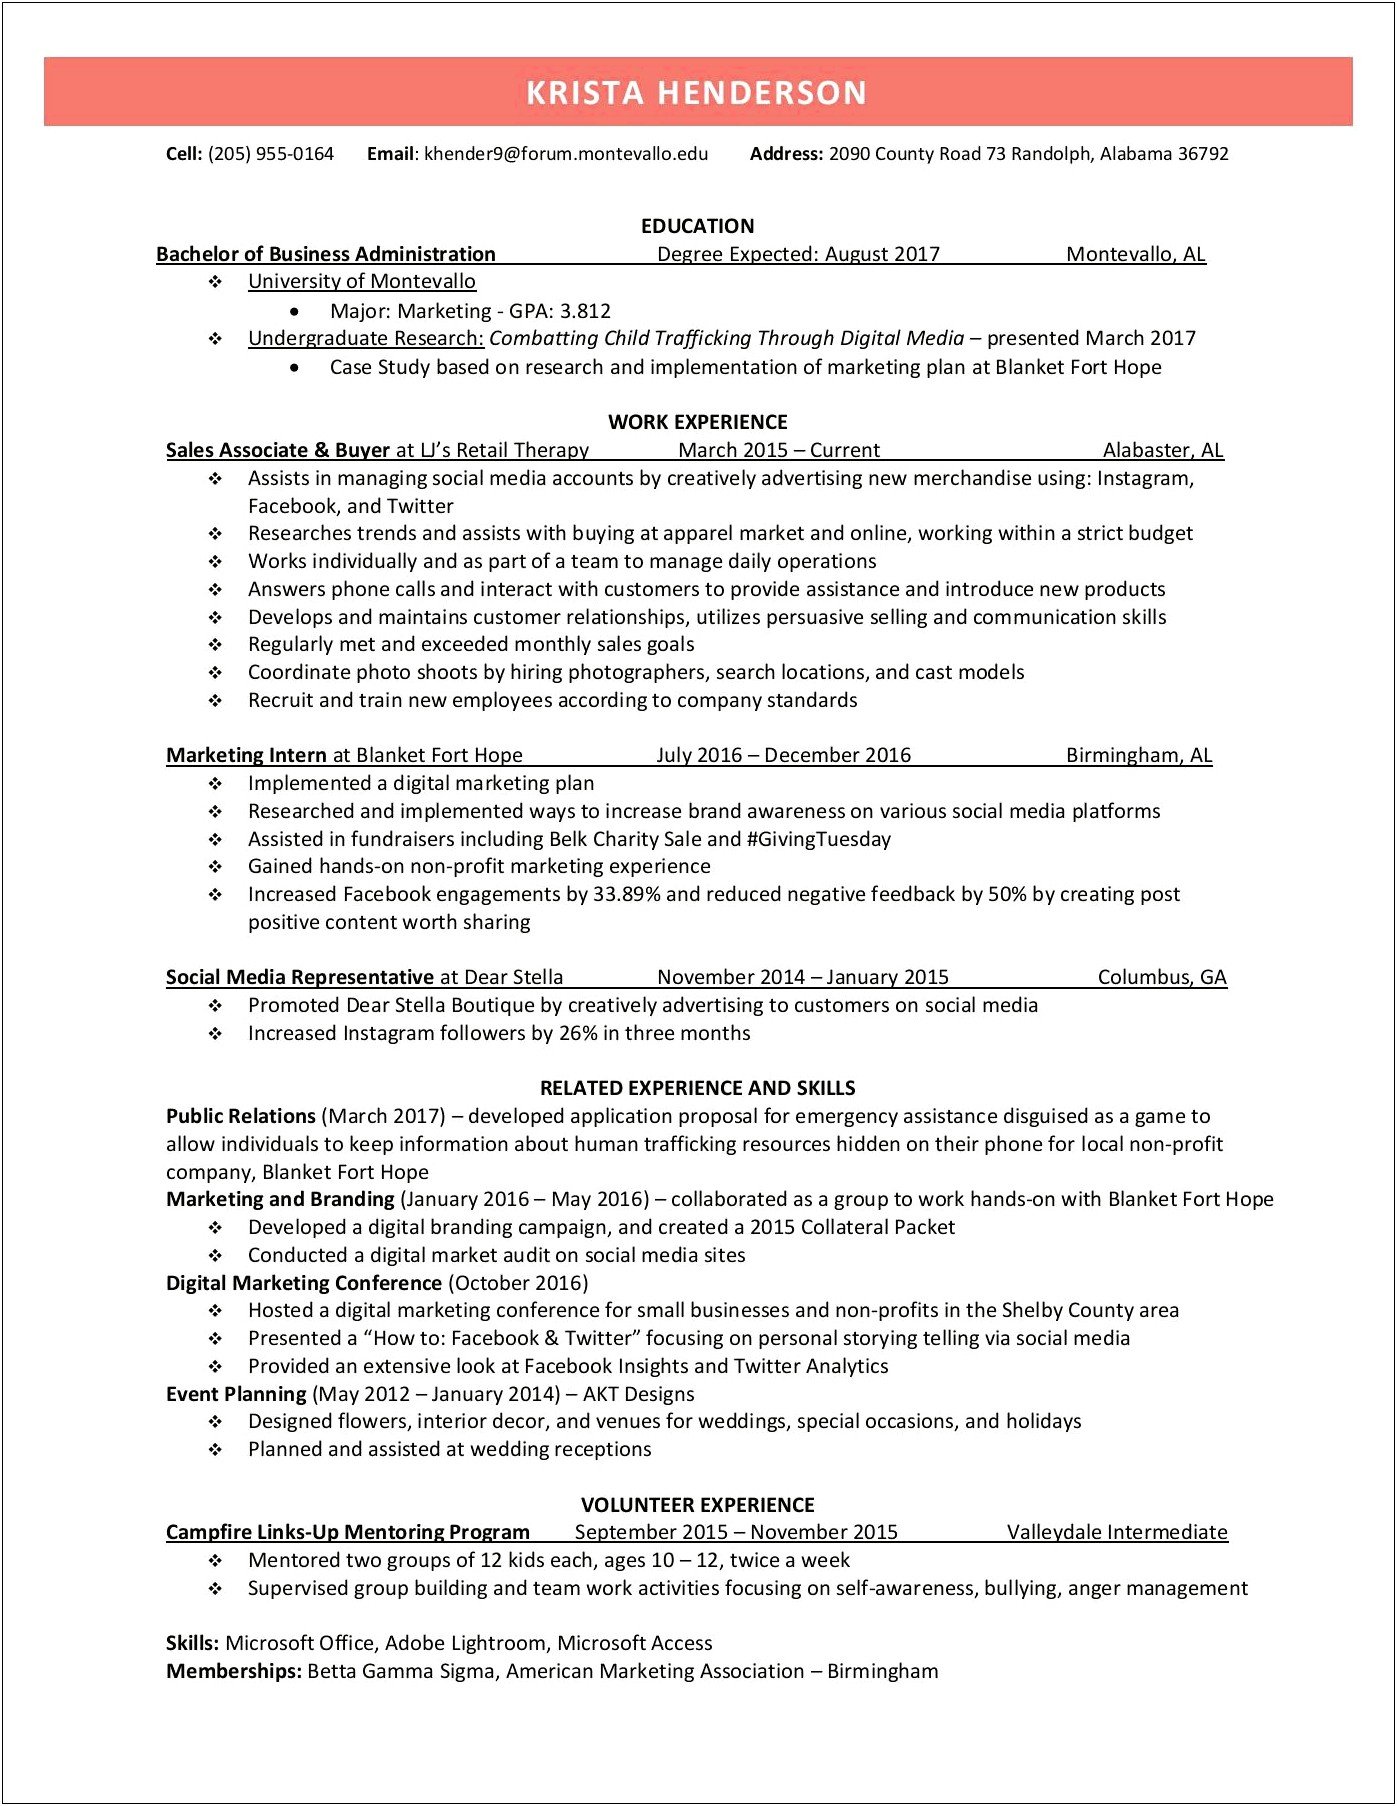 Belk Sales Associate Children's Department Description Resume